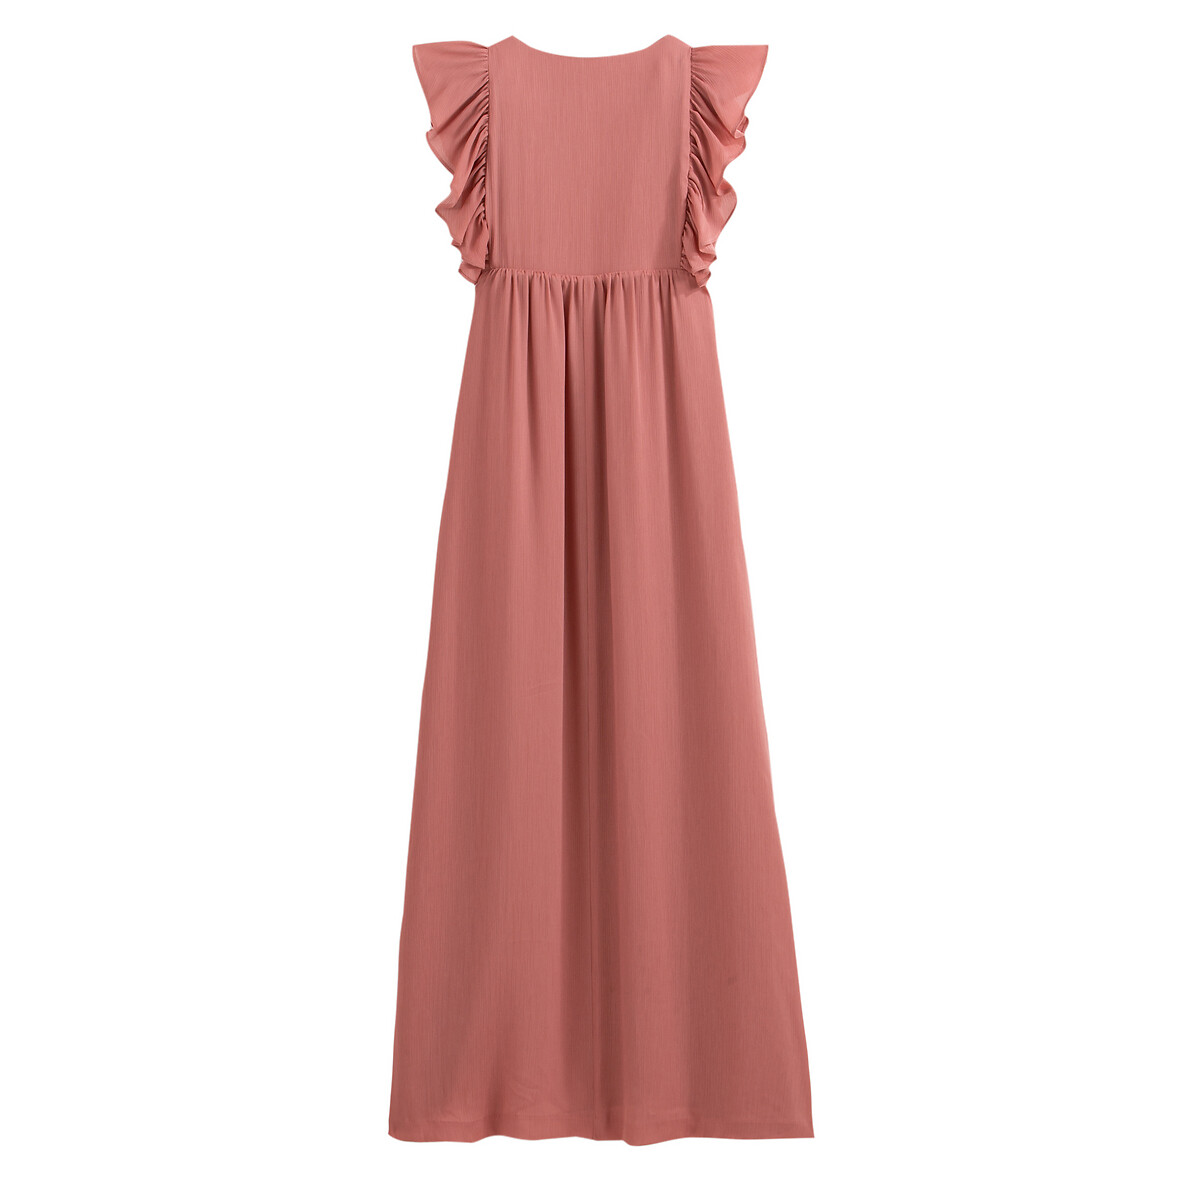 Платье La Redoute Длинное без рукавов 38 (FR) - 44 (RUS) розовый, размер 38 (FR) - 44 (RUS) Длинное без рукавов 38 (FR) - 44 (RUS) розовый - фото 3